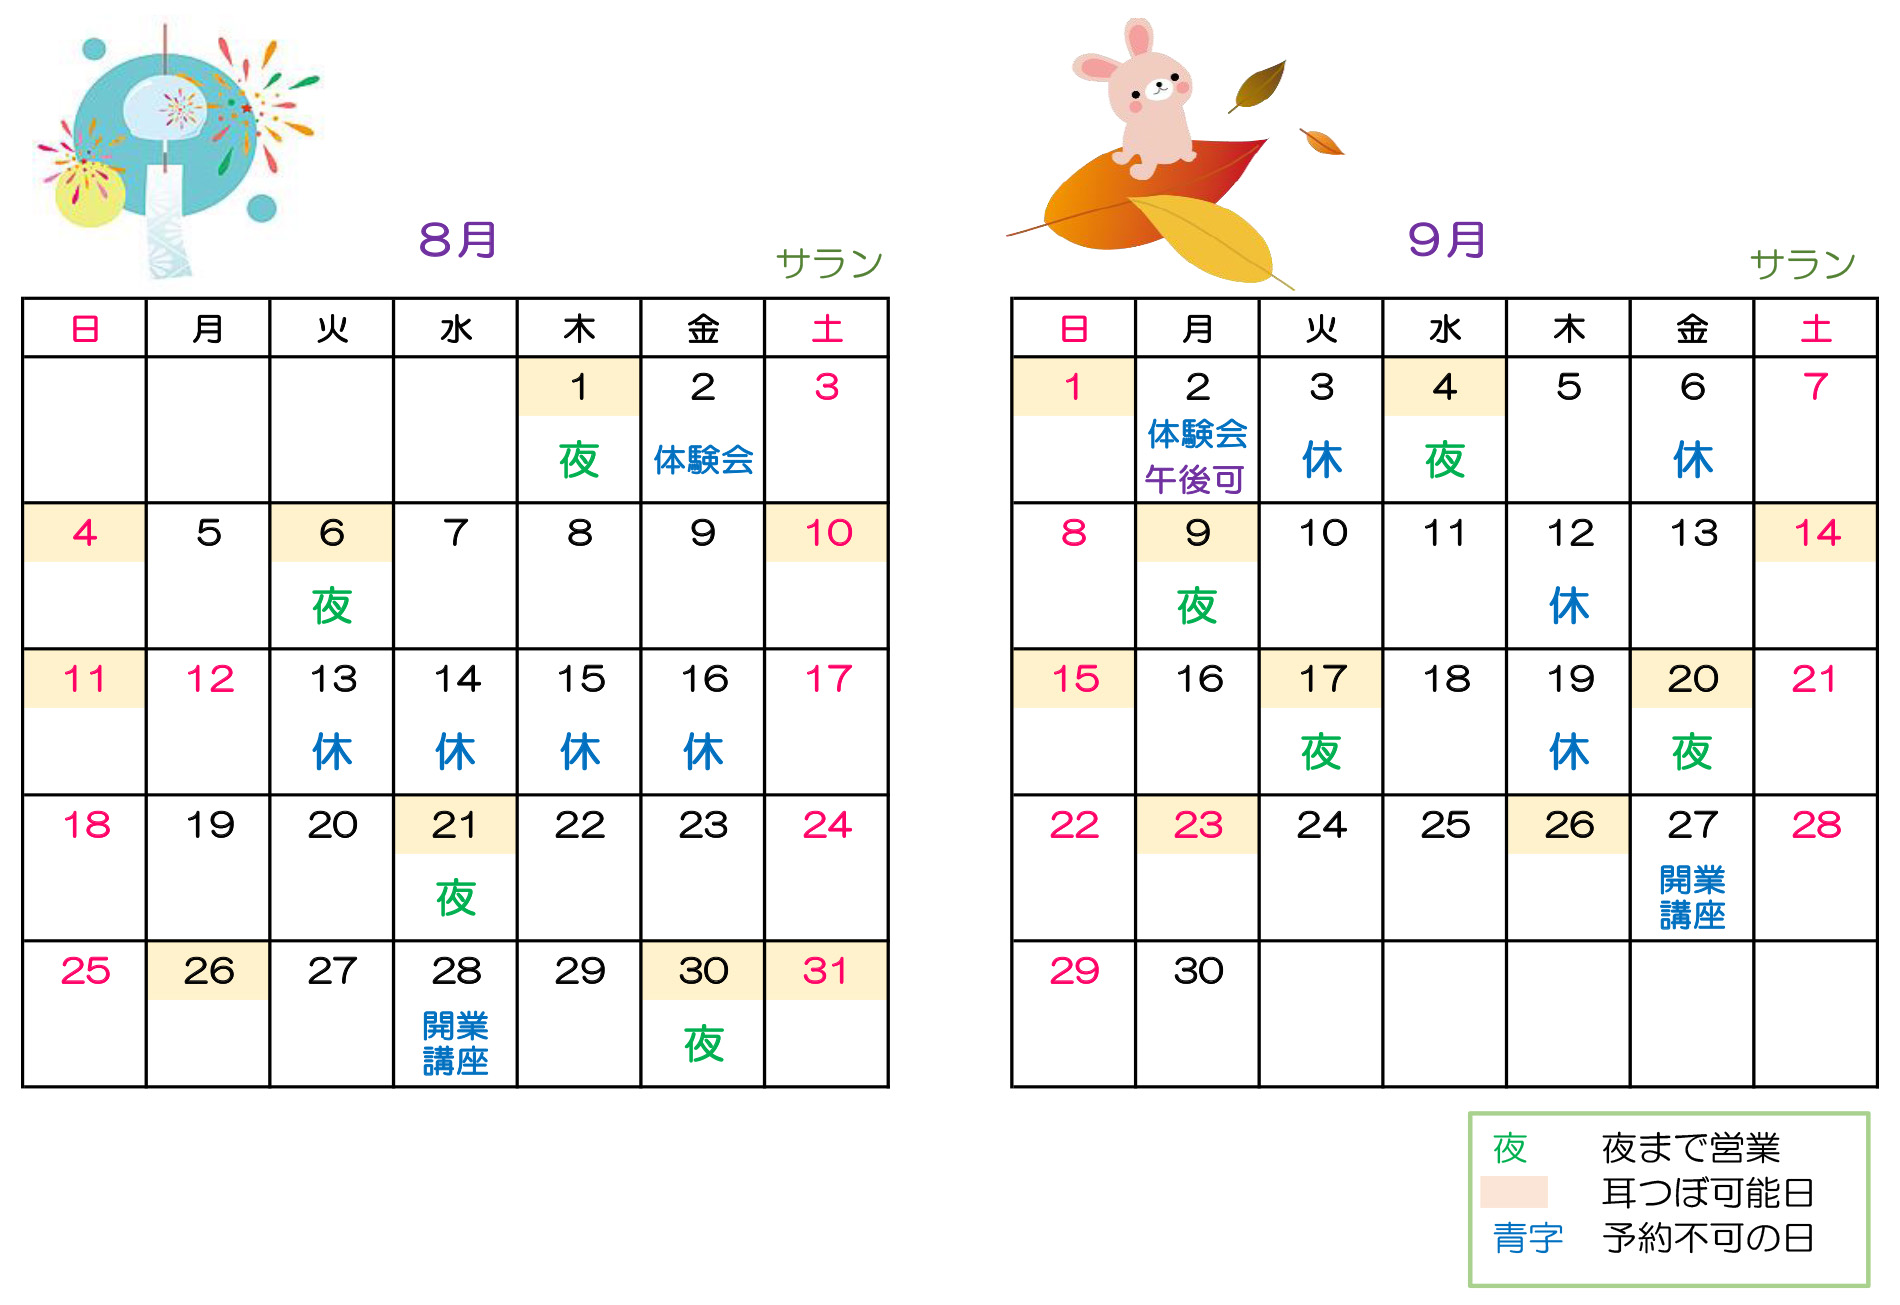 ”カレンダー”